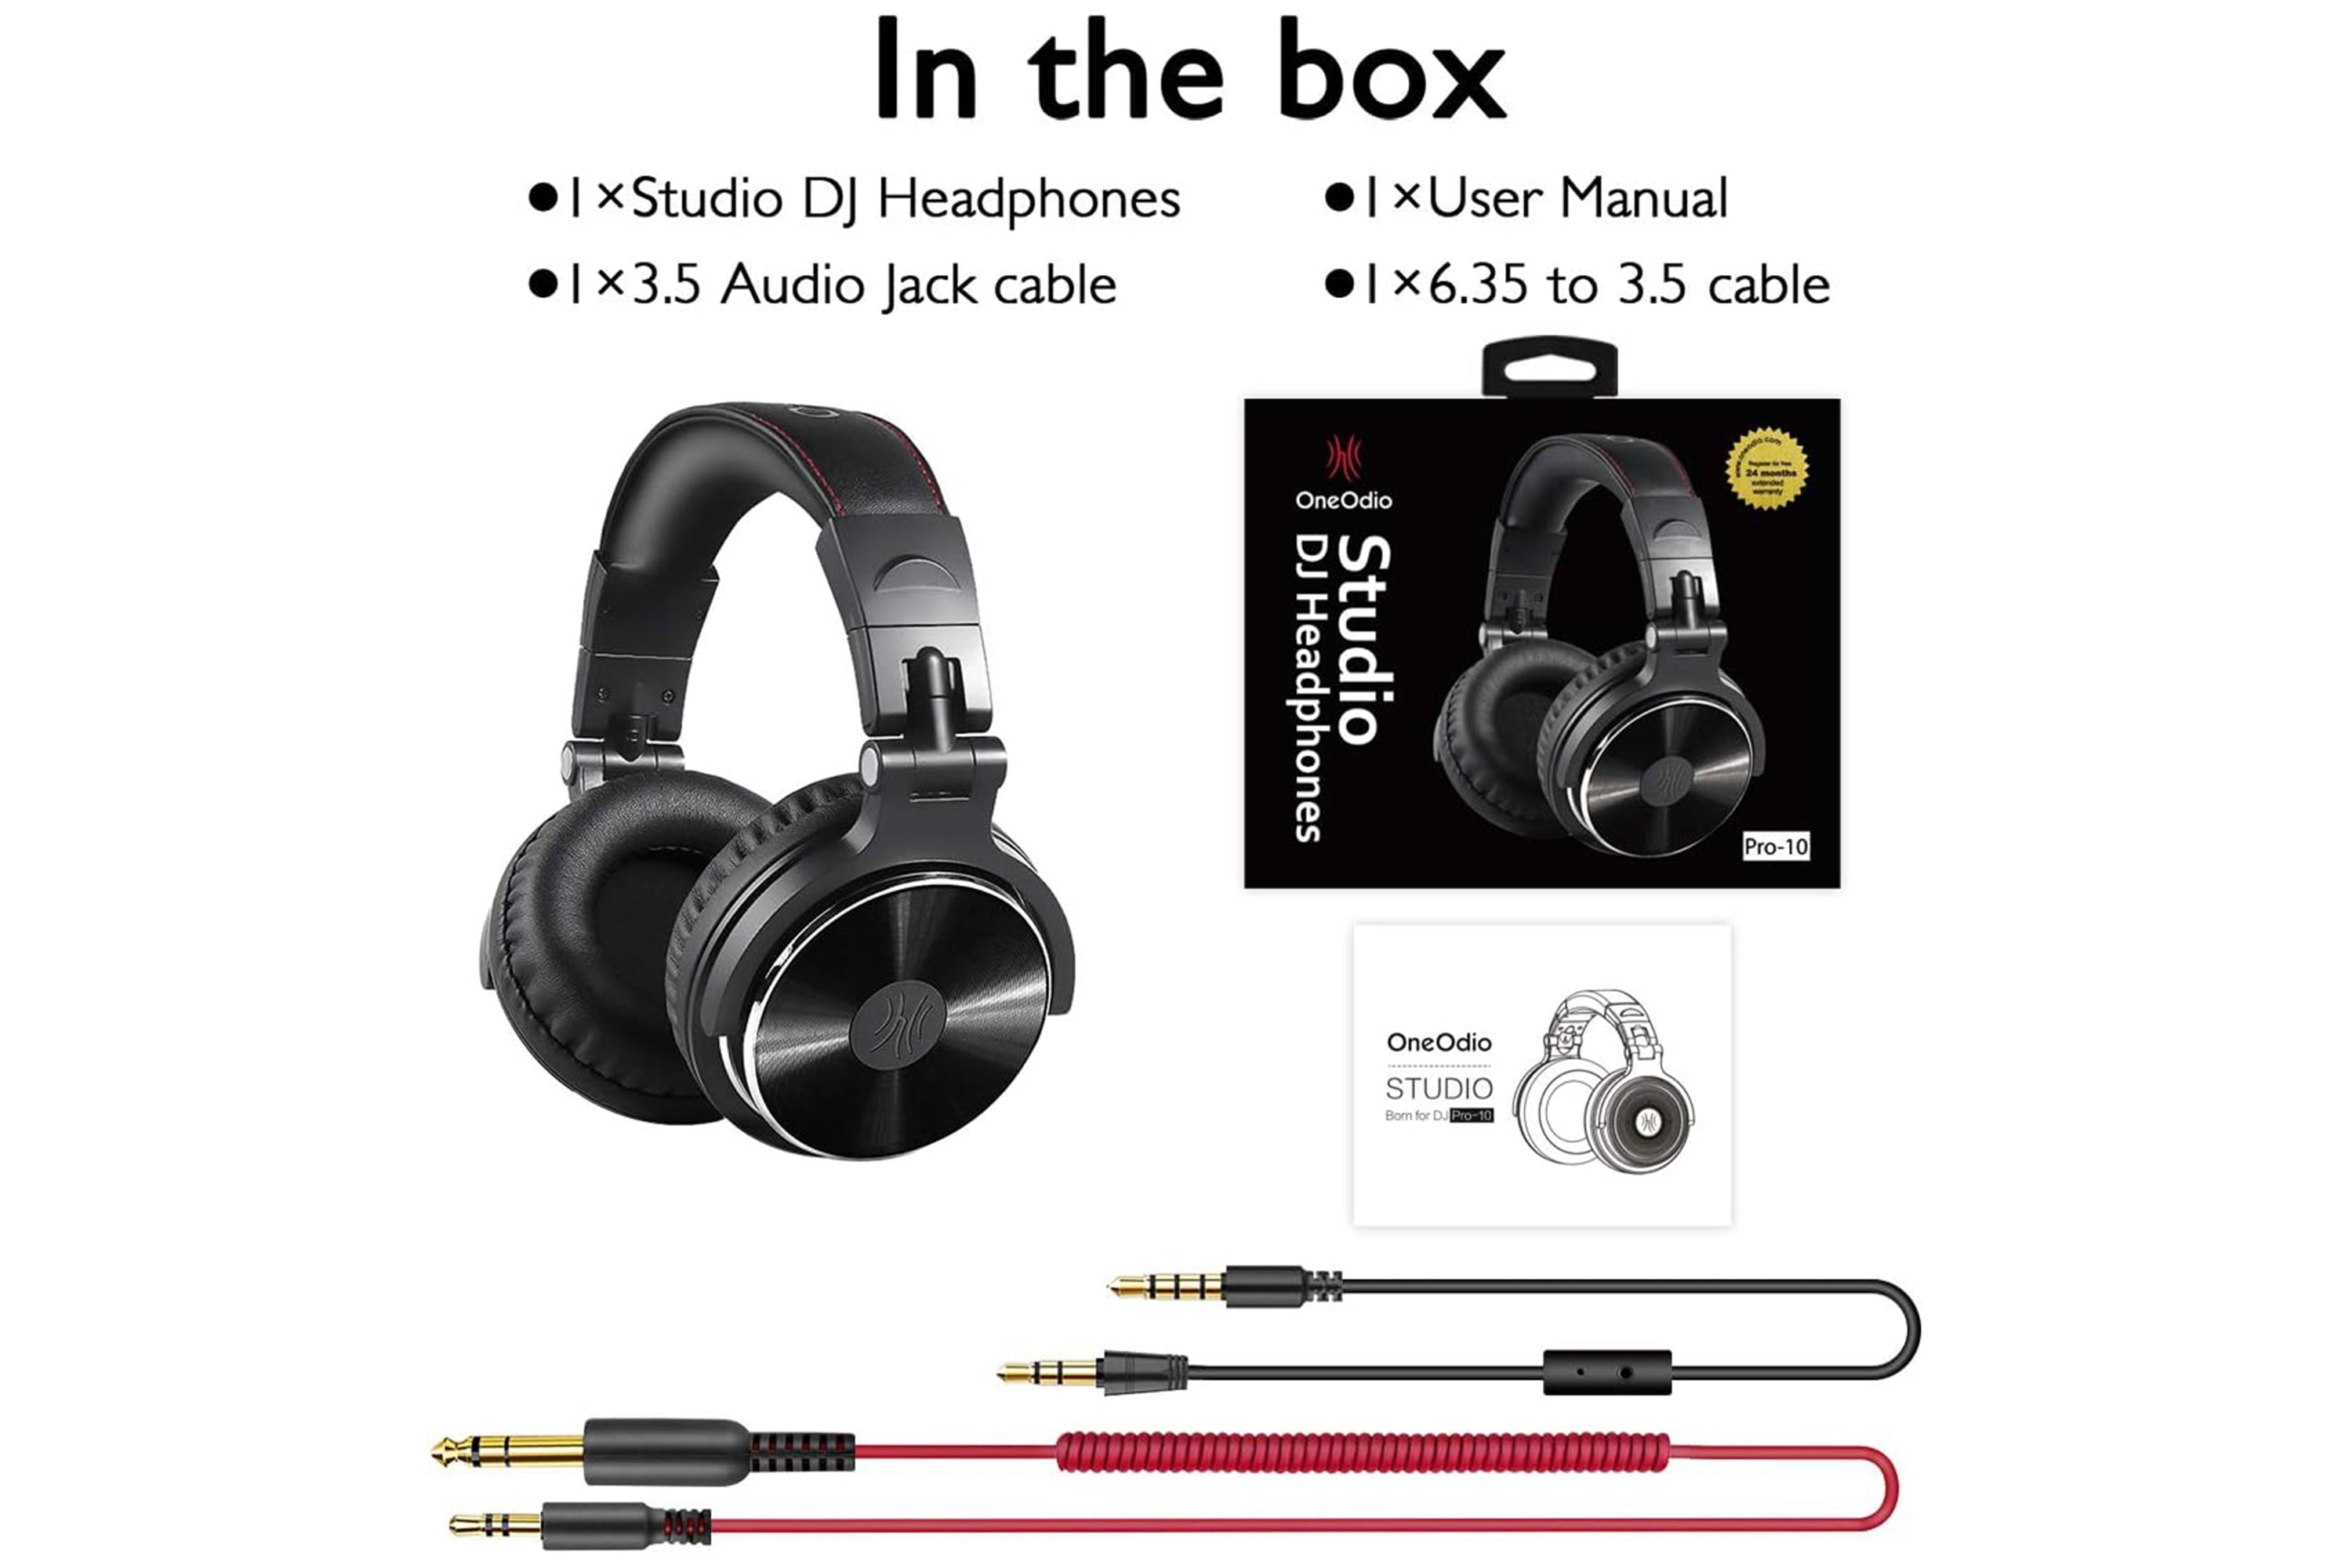 OneOdio Studio Pro 10 Headphones